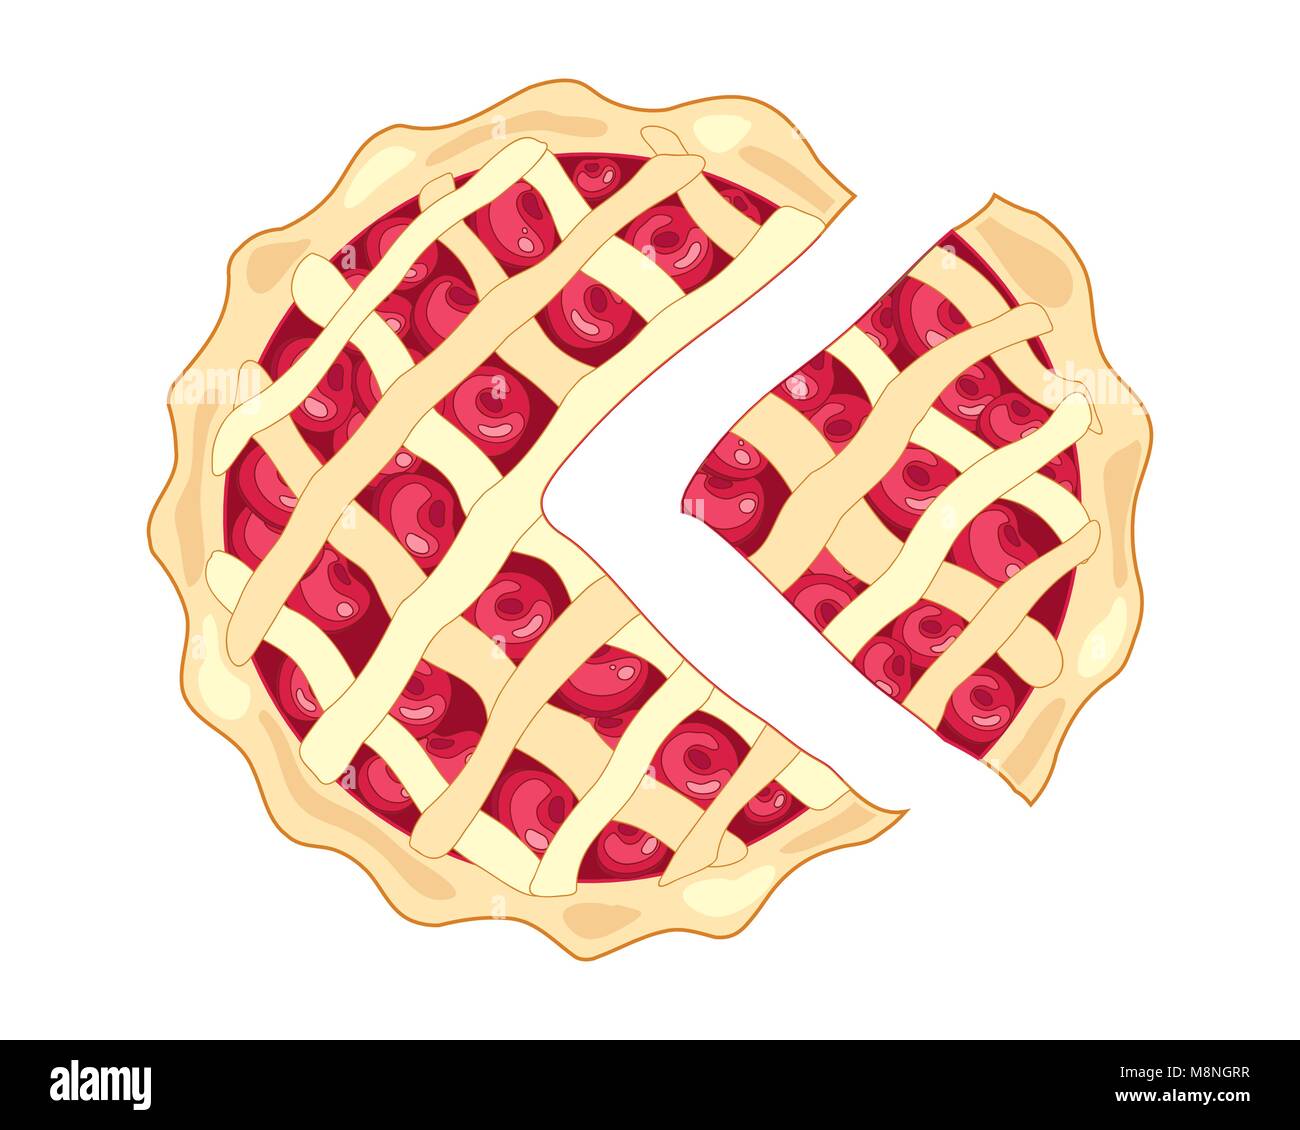 Un vecteur illustration au format eps d'une tranche de cherry pie avec une croûte dorée et conception de réseau avec des cerises rouges mûrs sur un fond blanc Illustration de Vecteur